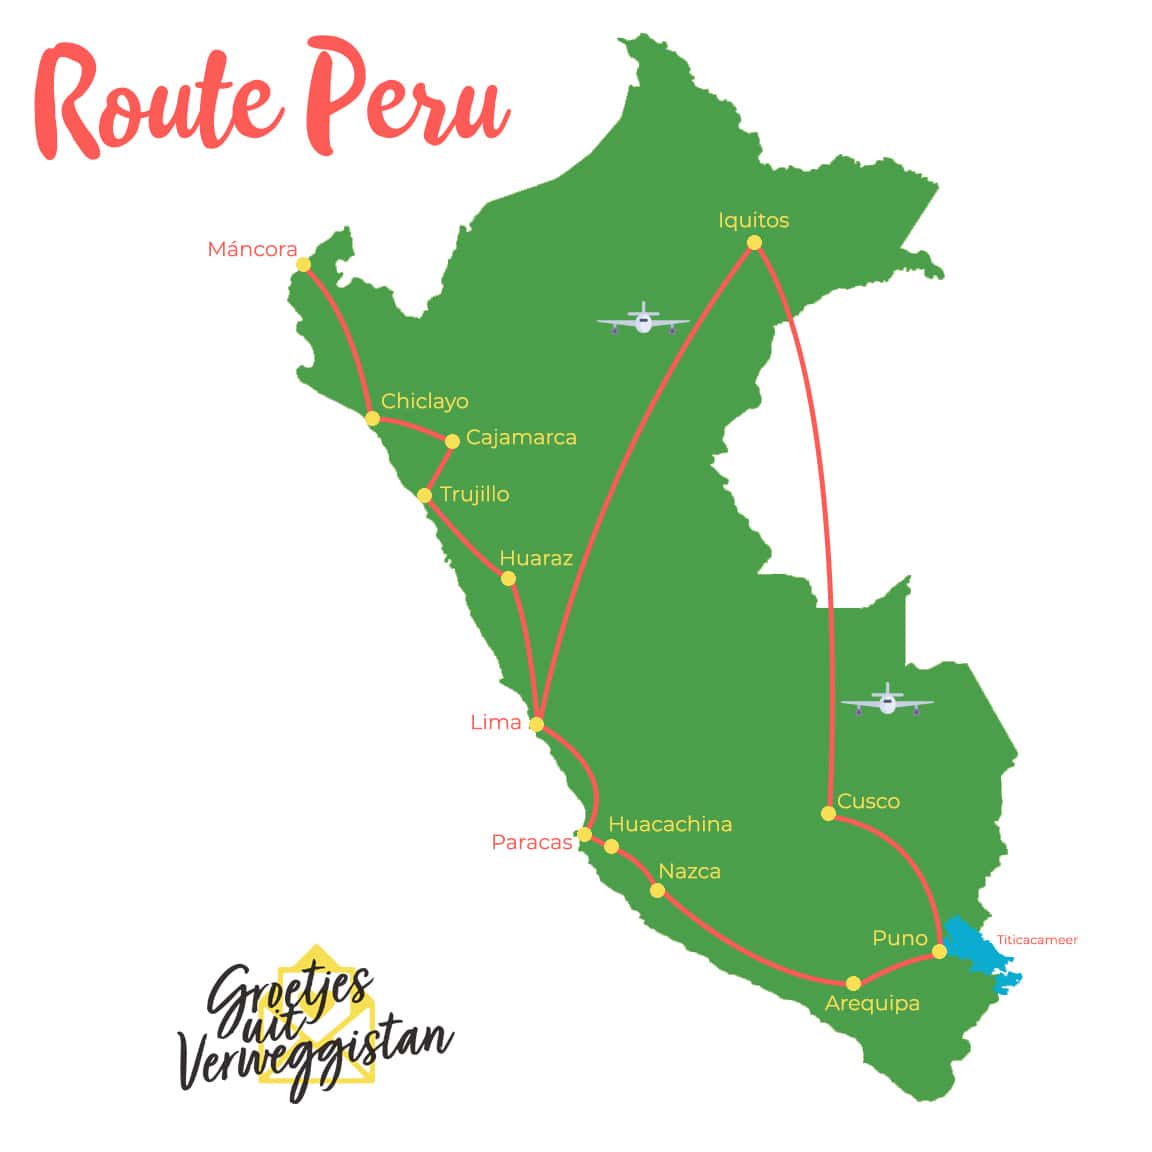 Kaart van Peru met daarop een handige route Peru langs de bekende bezienswaardigheden